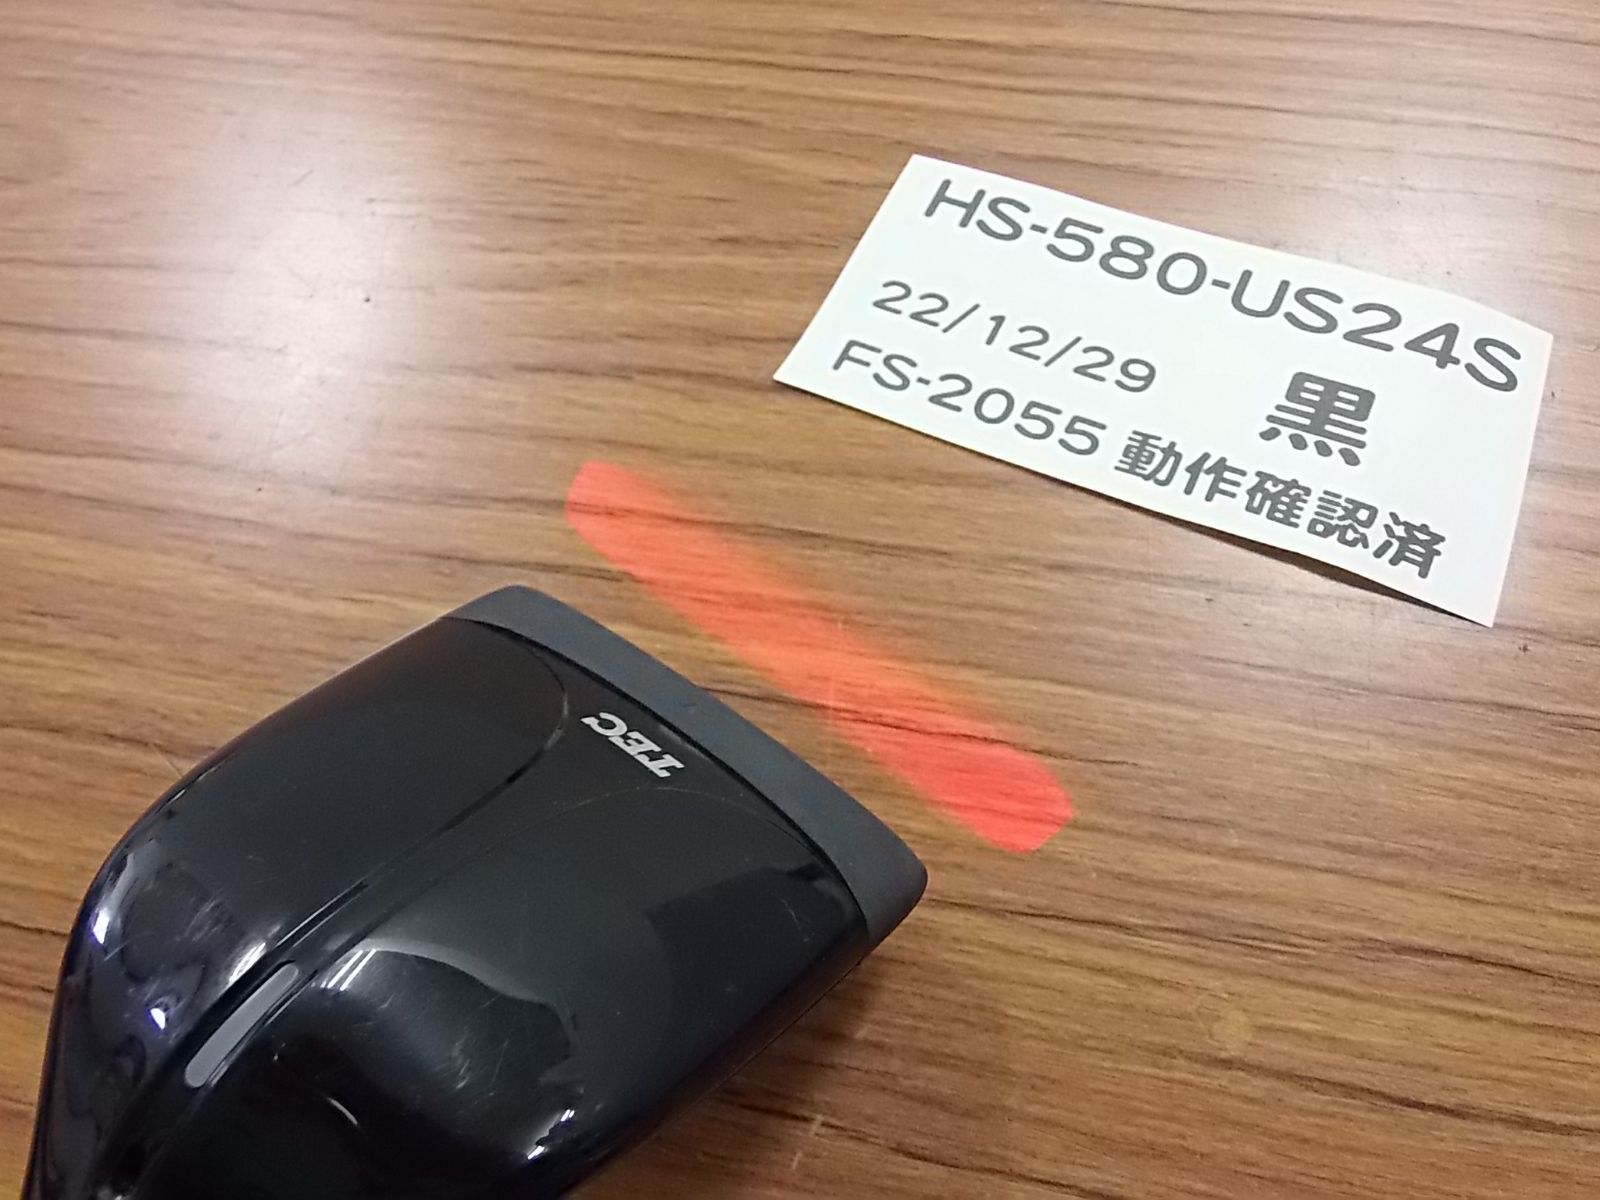 黒 東芝テックHS-580-U-24Sレジスター専用スキャナ中古品 - メルカリ